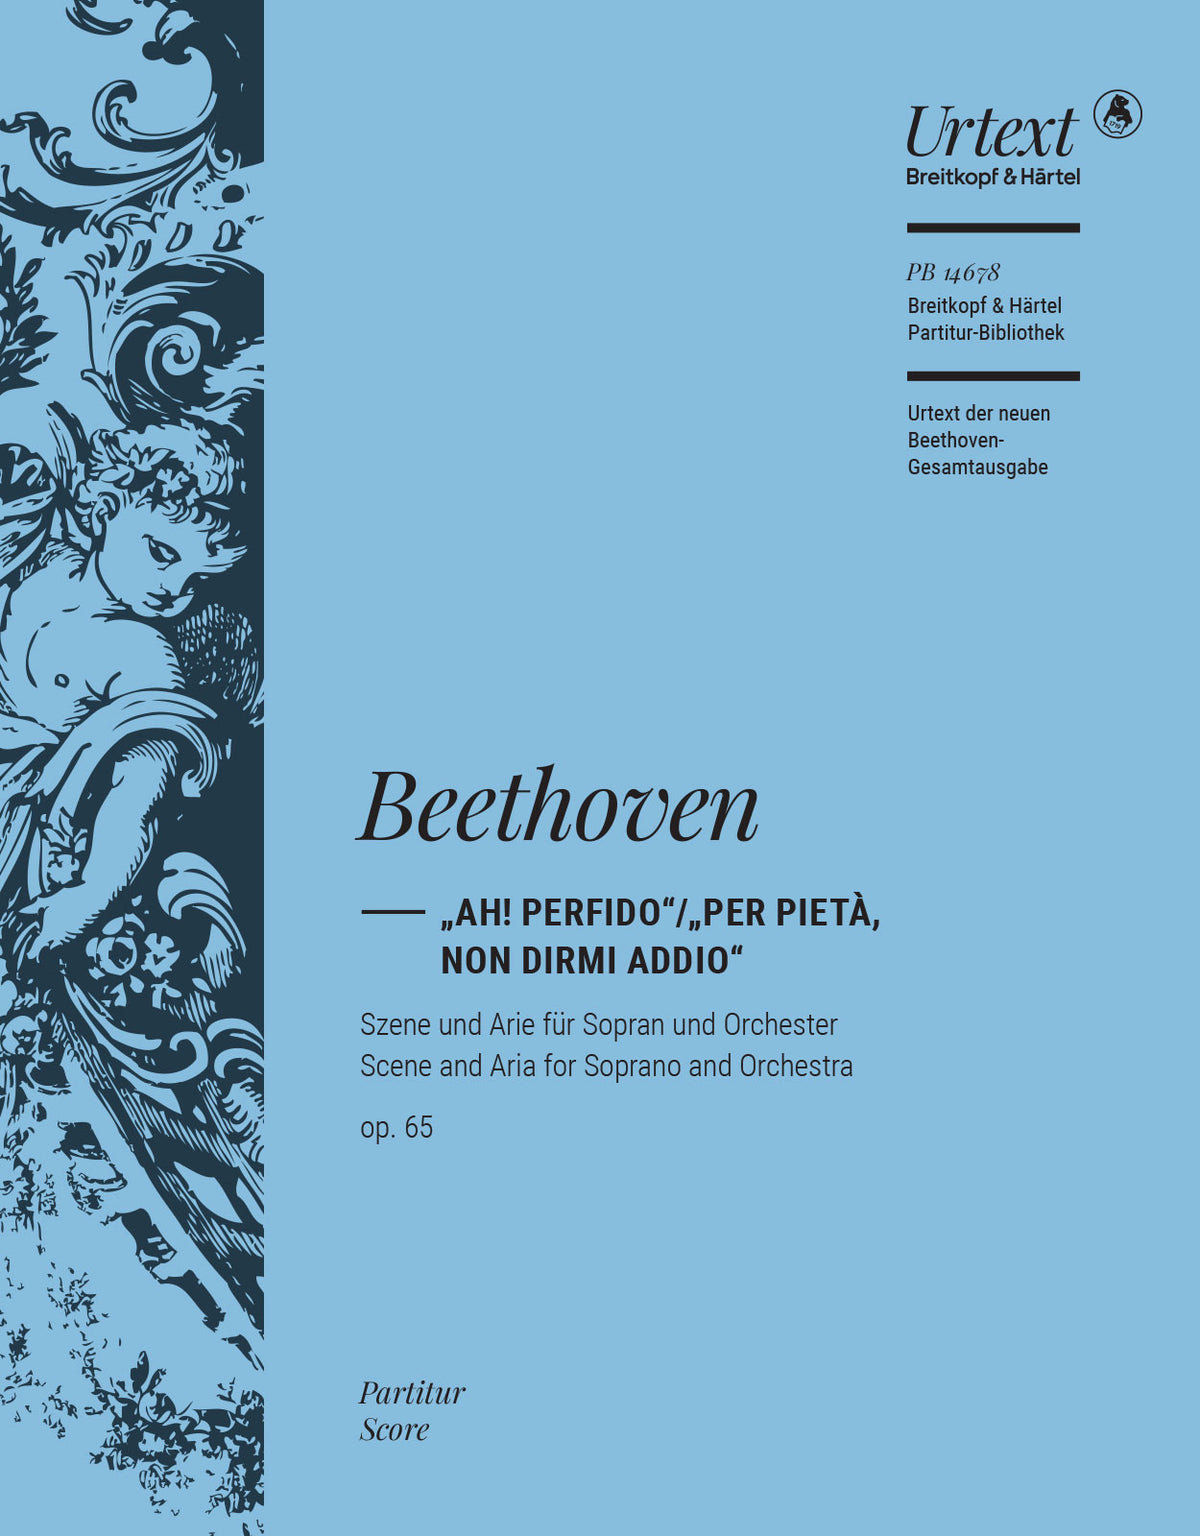 Beethoven “Ah! Perfido” and “Per pietà, non dirmi addio” Opus 65